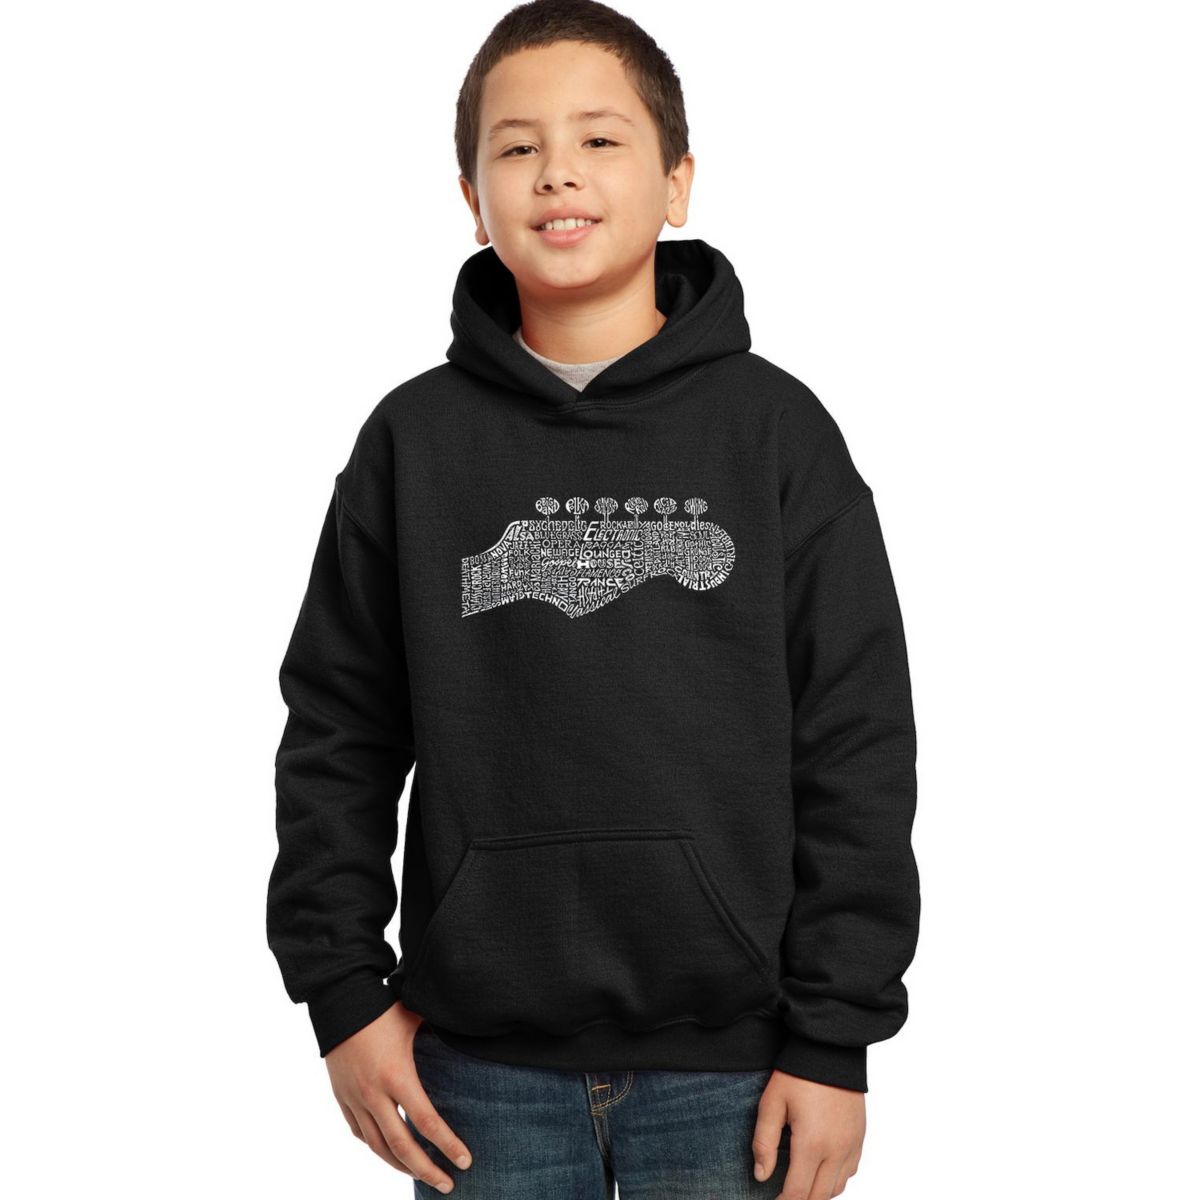 Guitar Head - Boy's Word Art Hooded Sweatshirt LA Pop Art